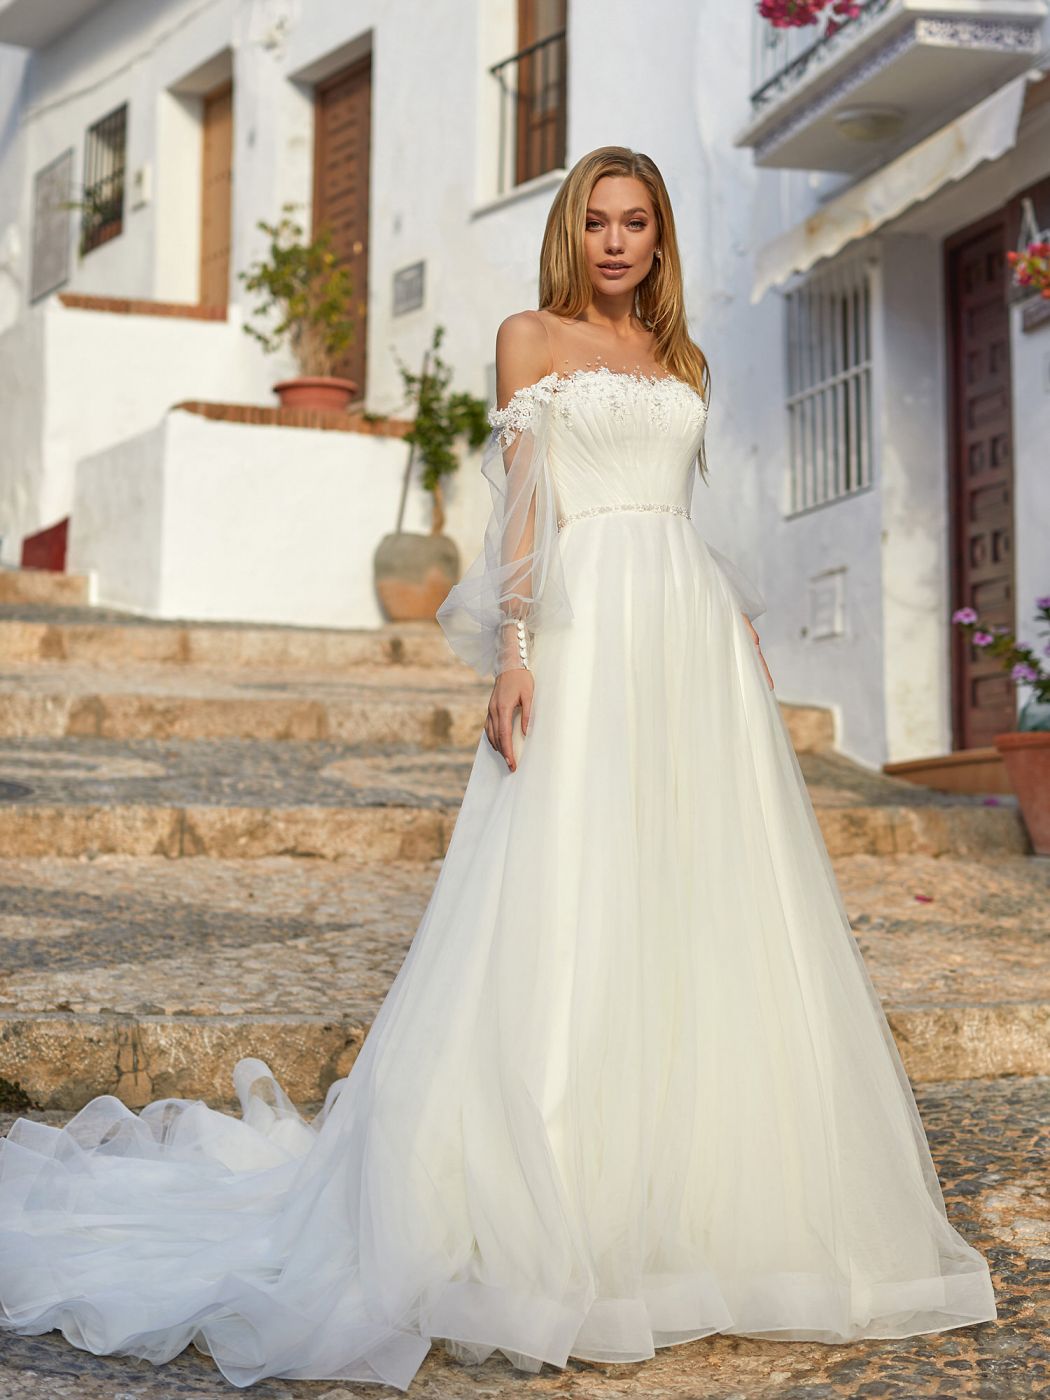 Воздушное пышное свадебное платье с длинным шлейфом и нежным декором  Арт. 093